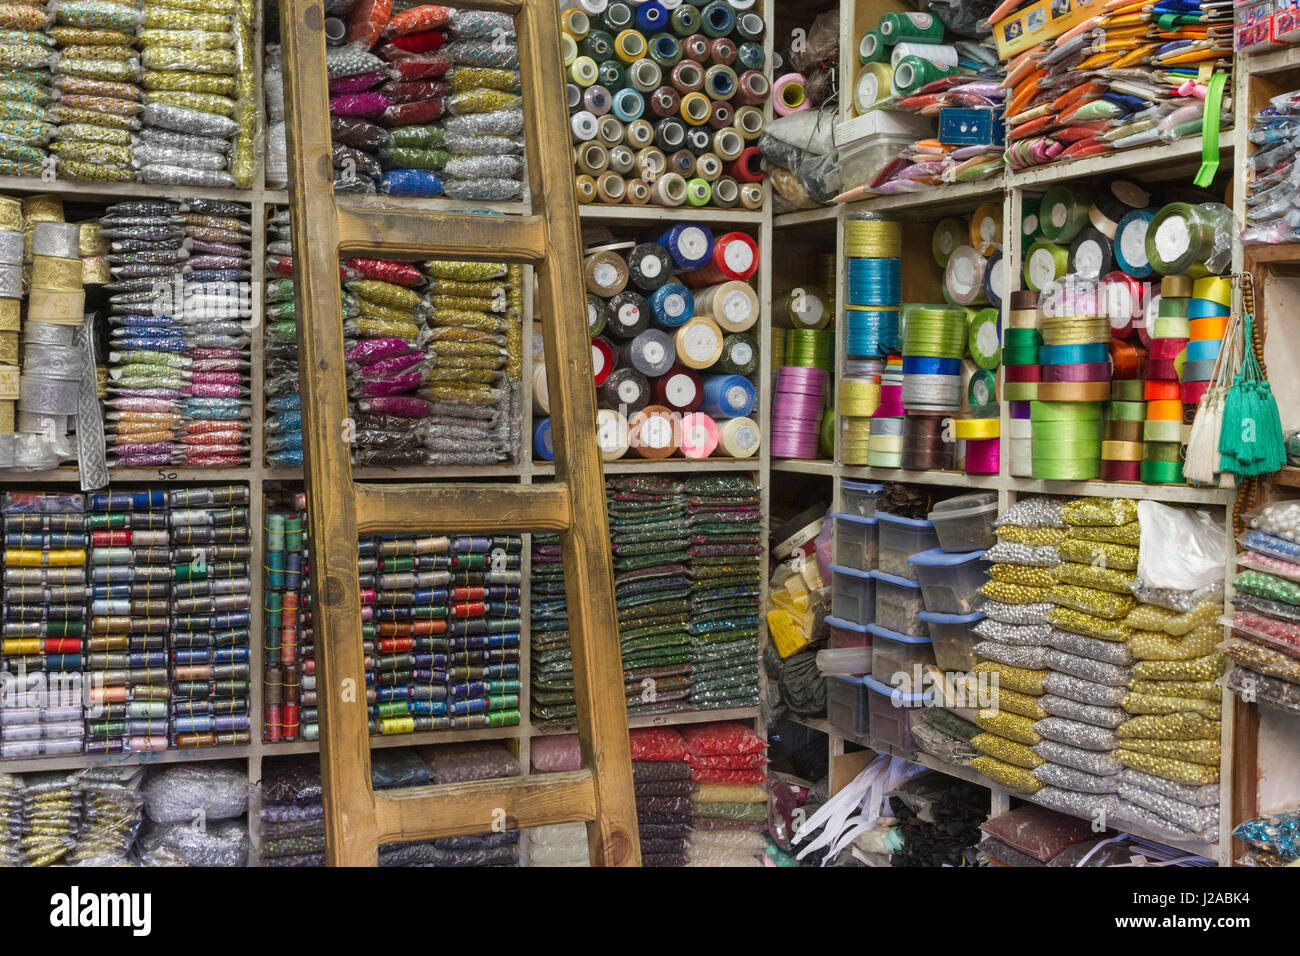 Africa, Marocco, Fes. Una cucitura e nozioni shop nella medina. Foto Stock